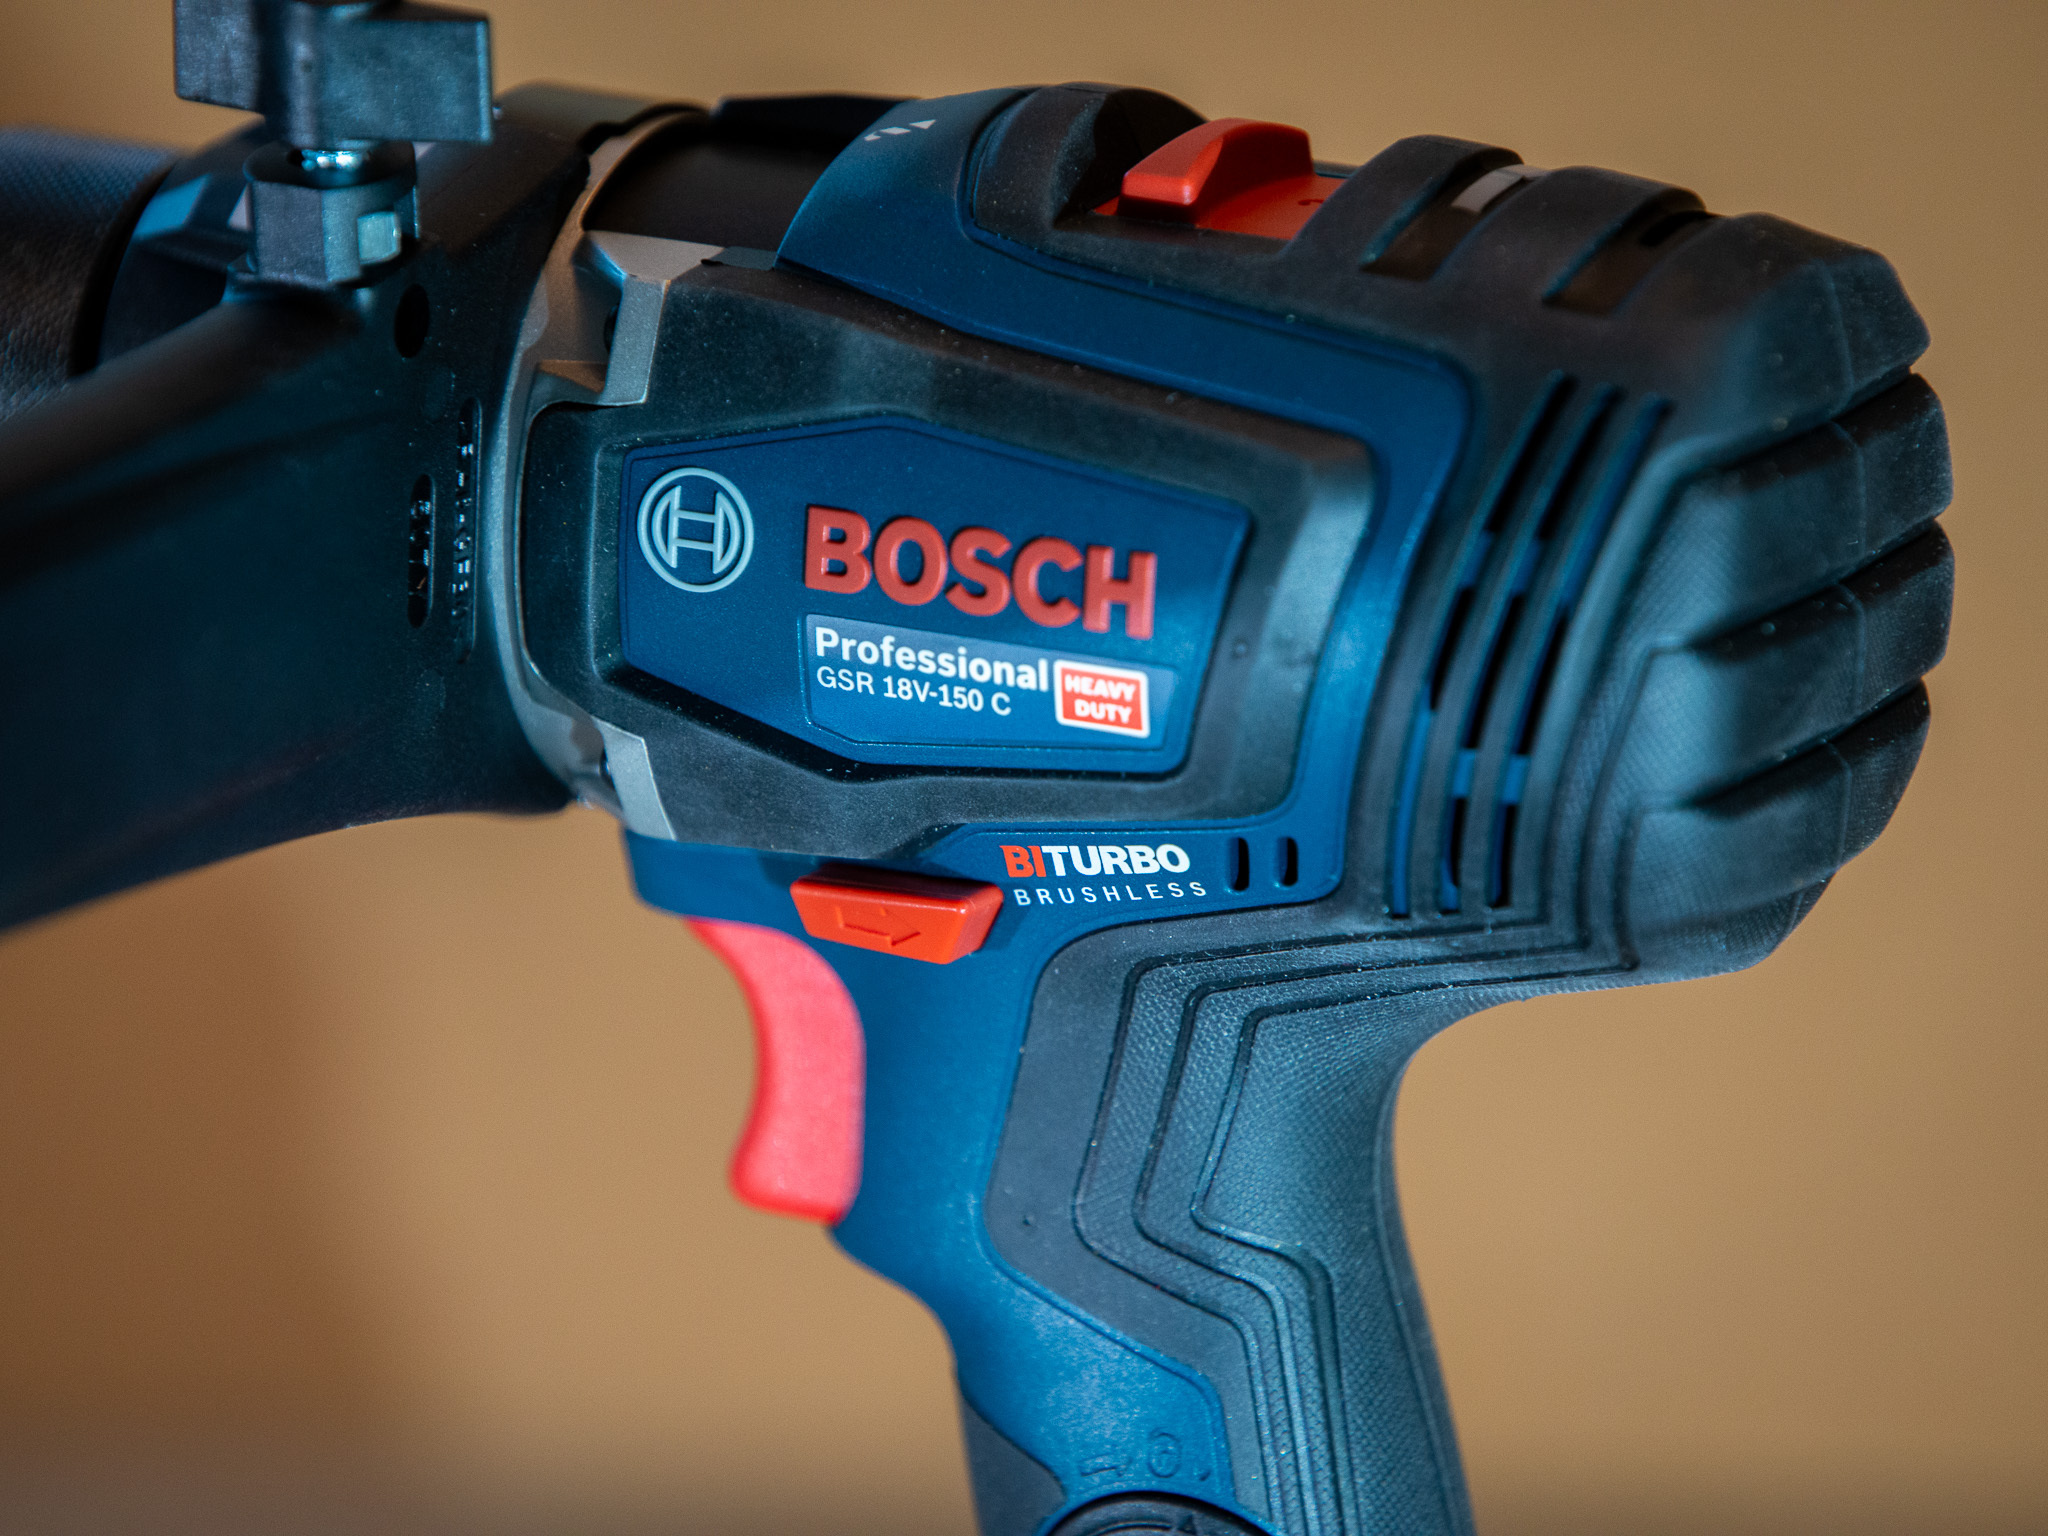 Bosch GSR 18 V 150 C 7